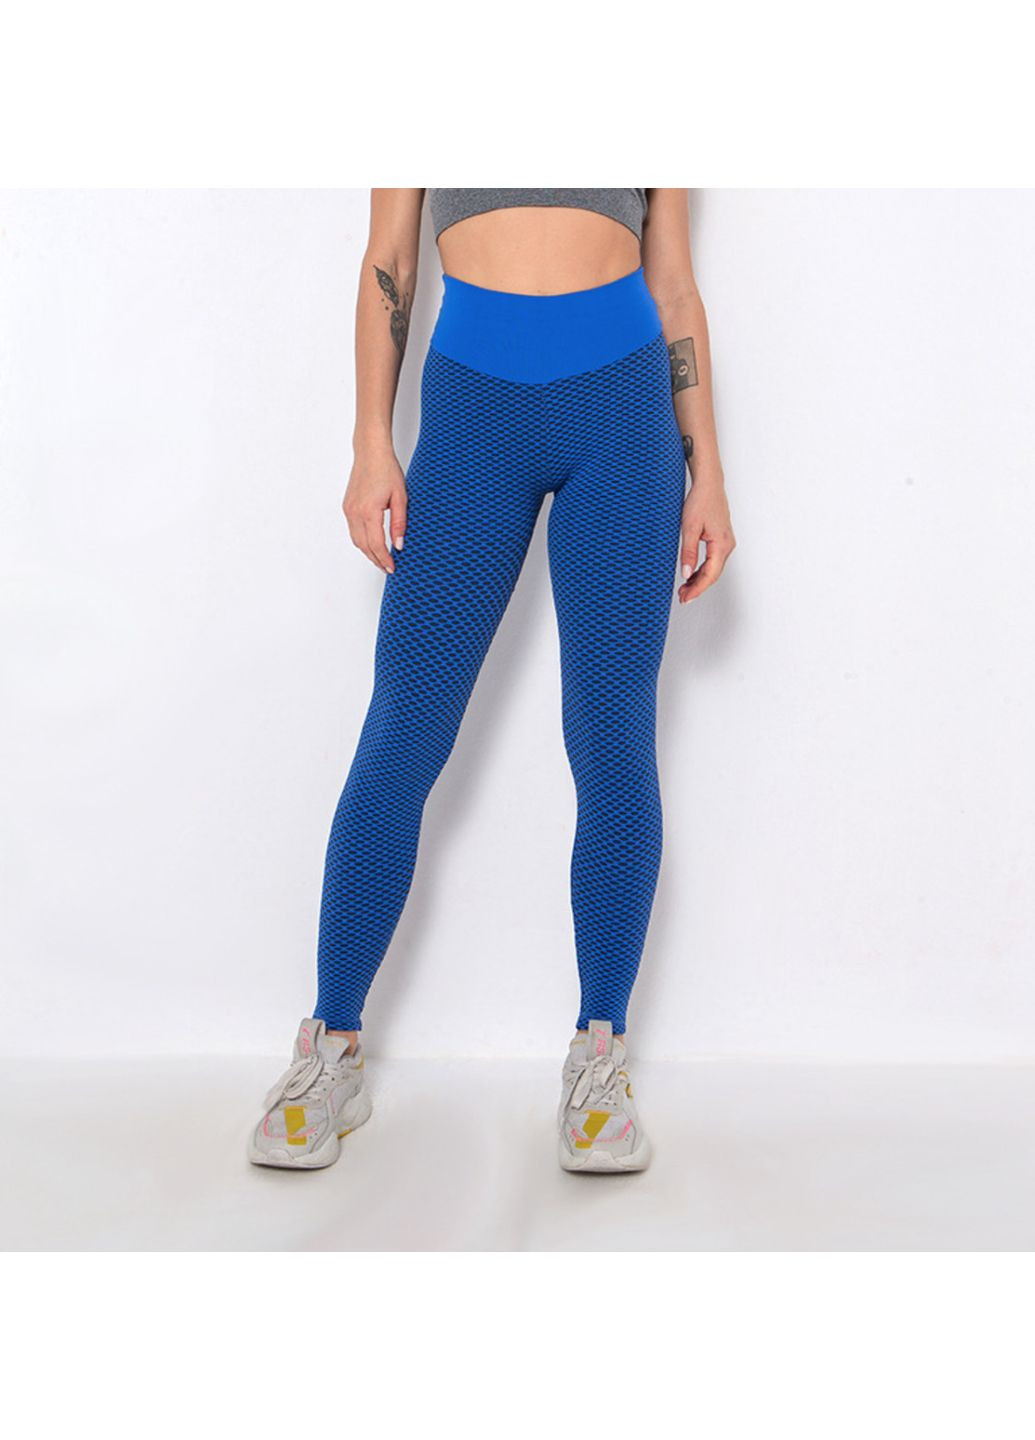 Комбинированные демисезонные леггинсы женские спортивные s 6096 синие Fashion